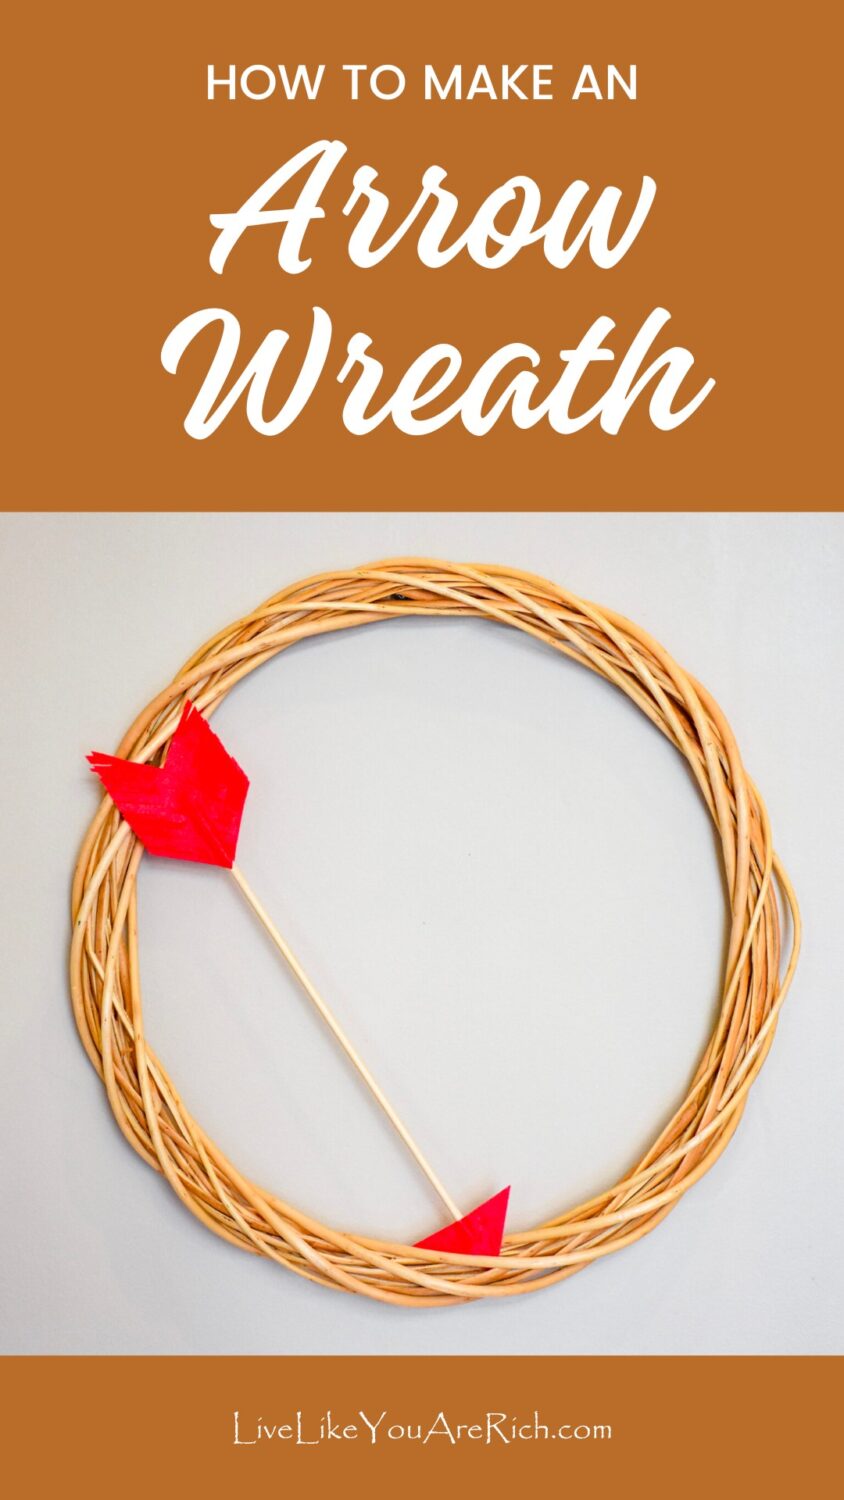 How to Make an Arrow Wreath